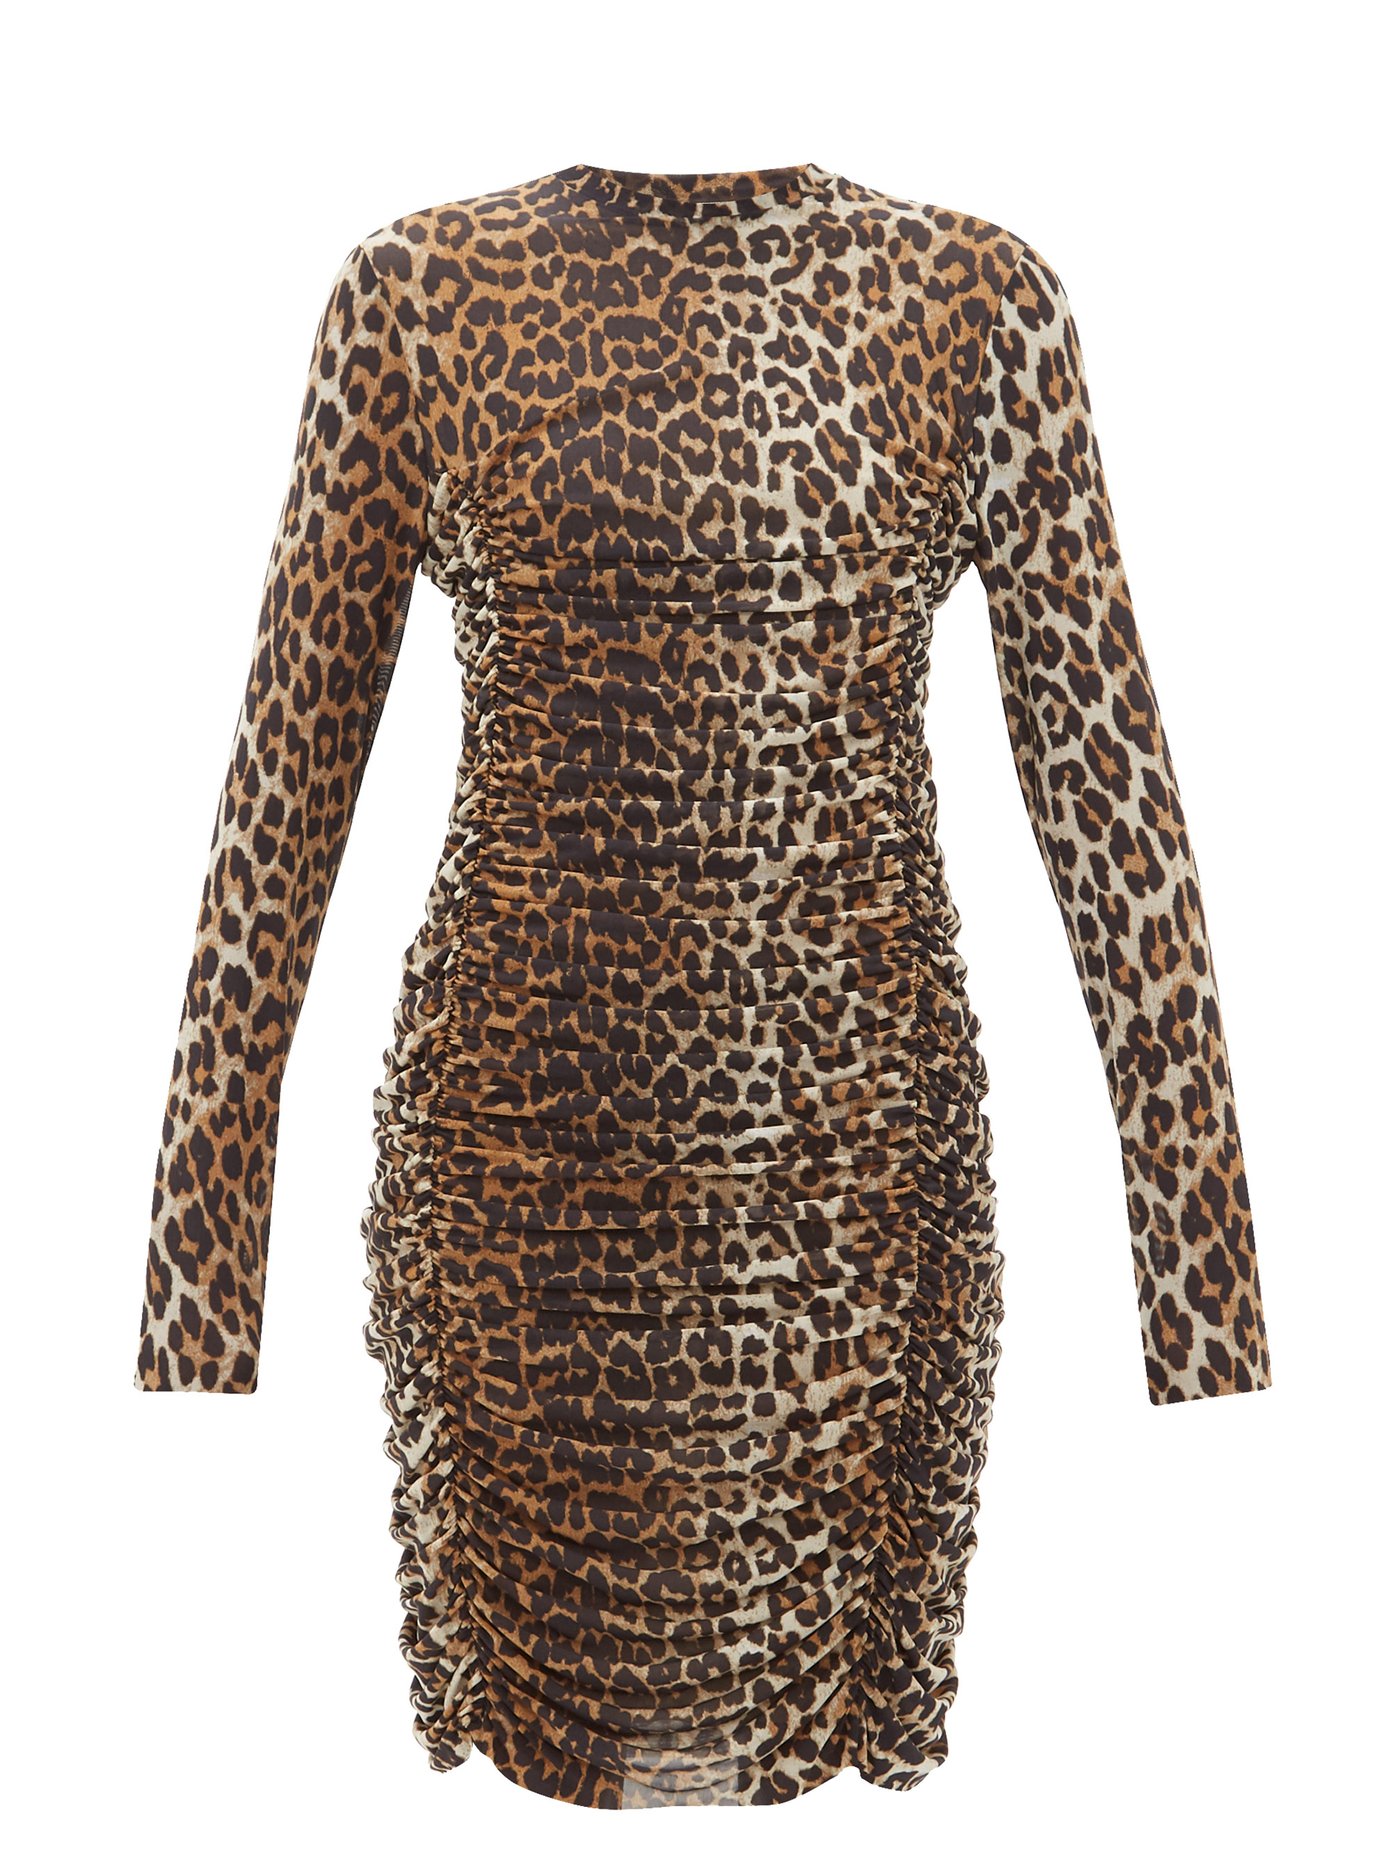 ganni mesh leopard dress